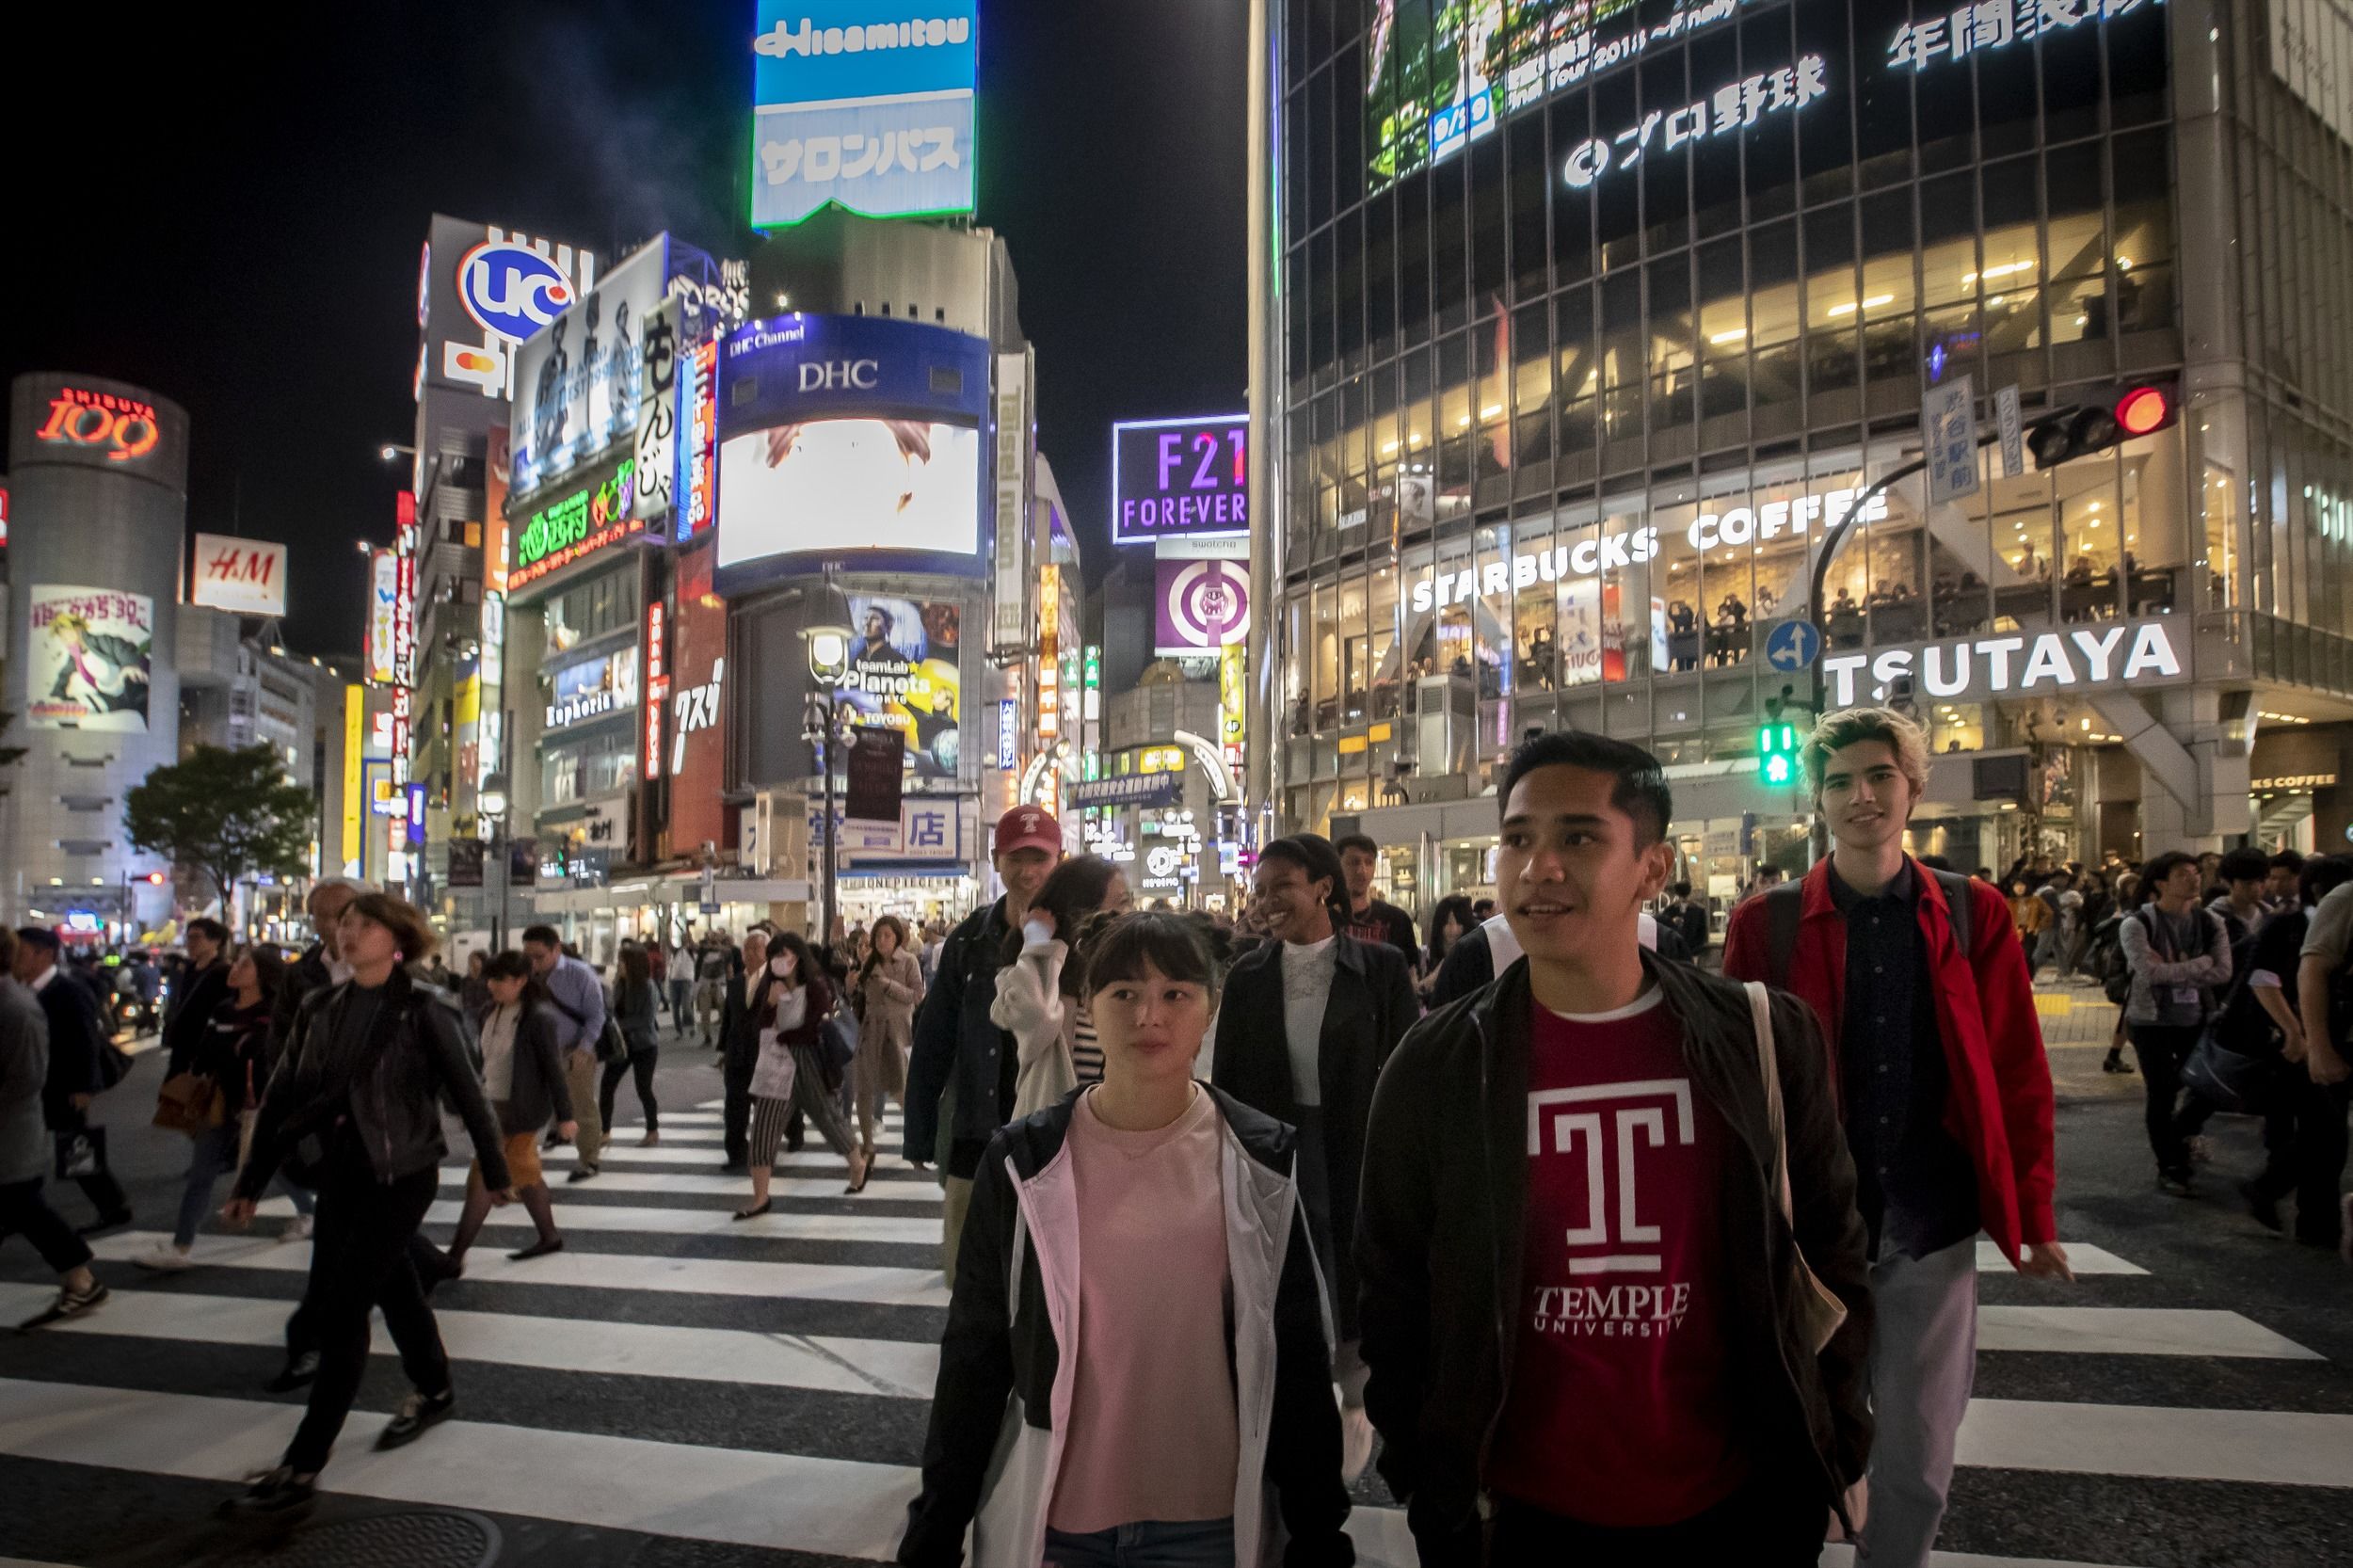 Pedestrians in Tokyo, Japan